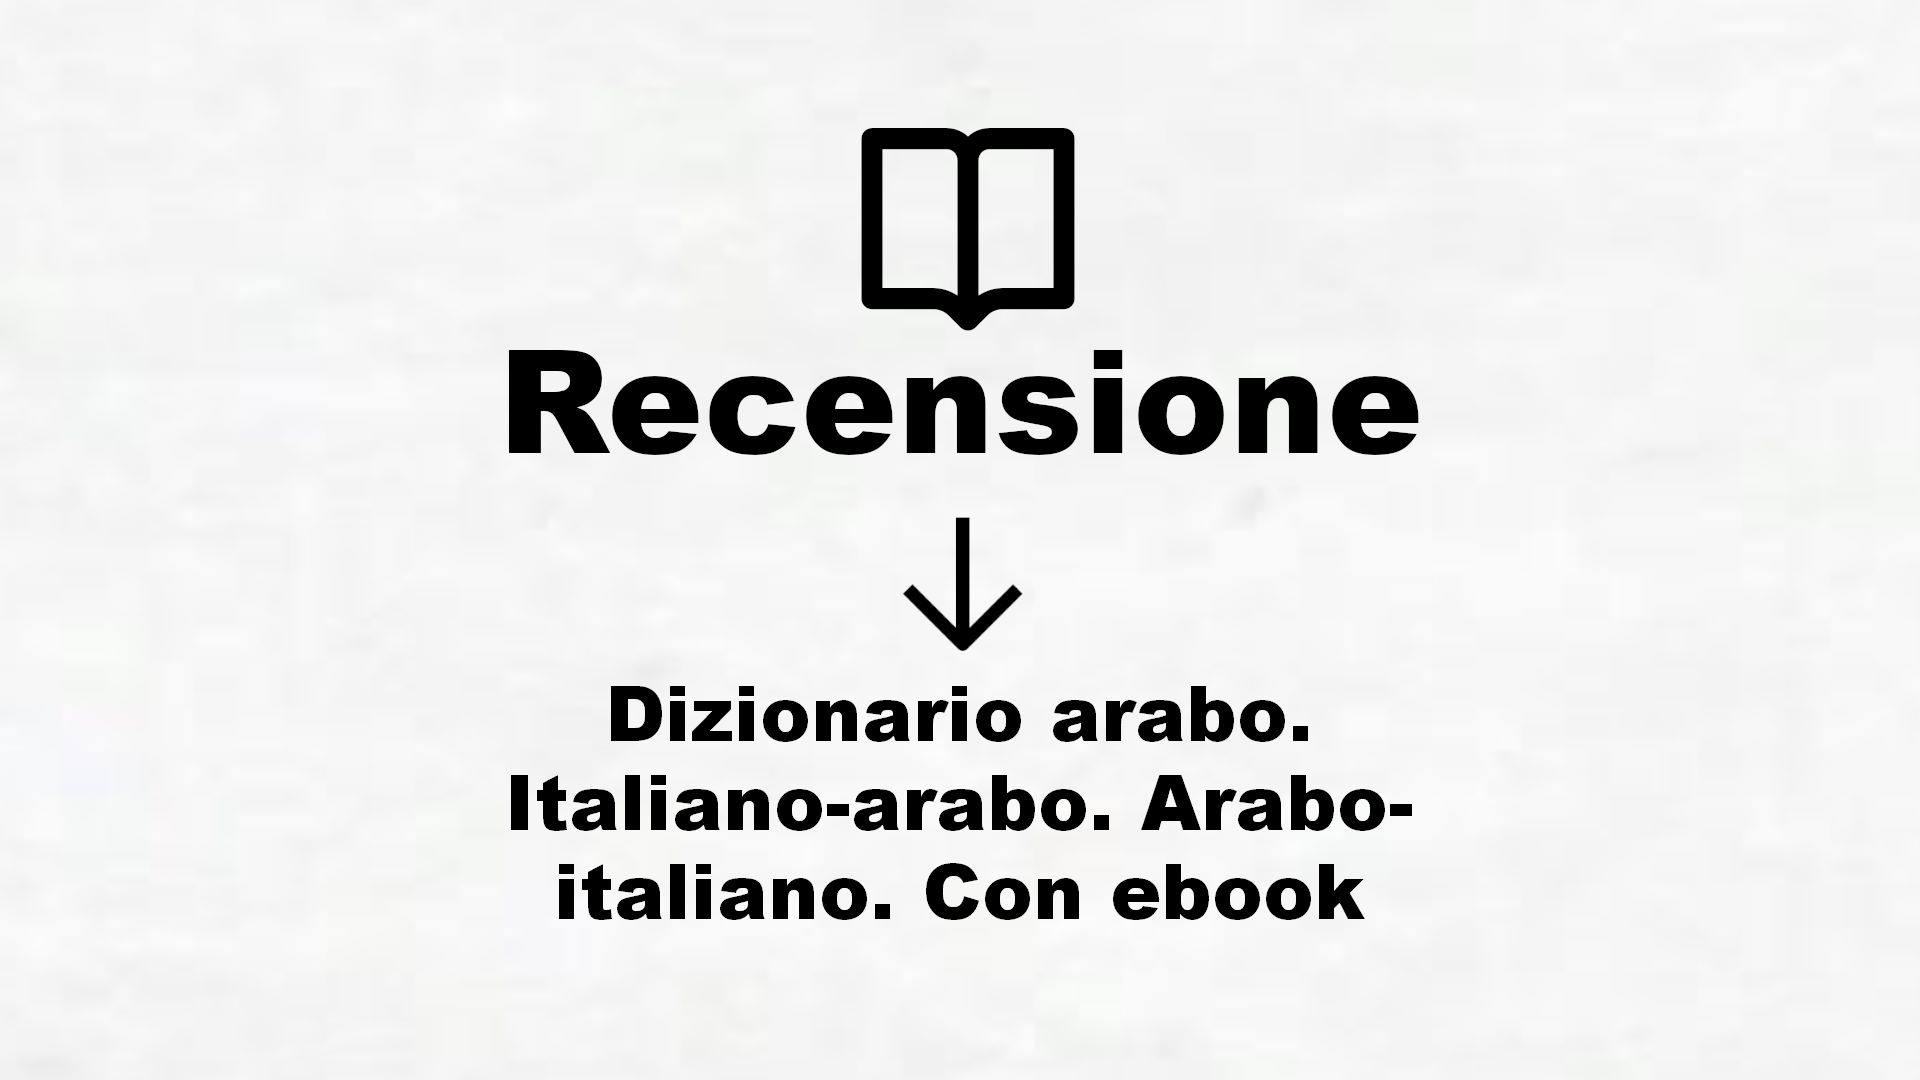 Dizionario arabo. Italiano-arabo. Arabo-italiano. Con ebook – Recensione Libro